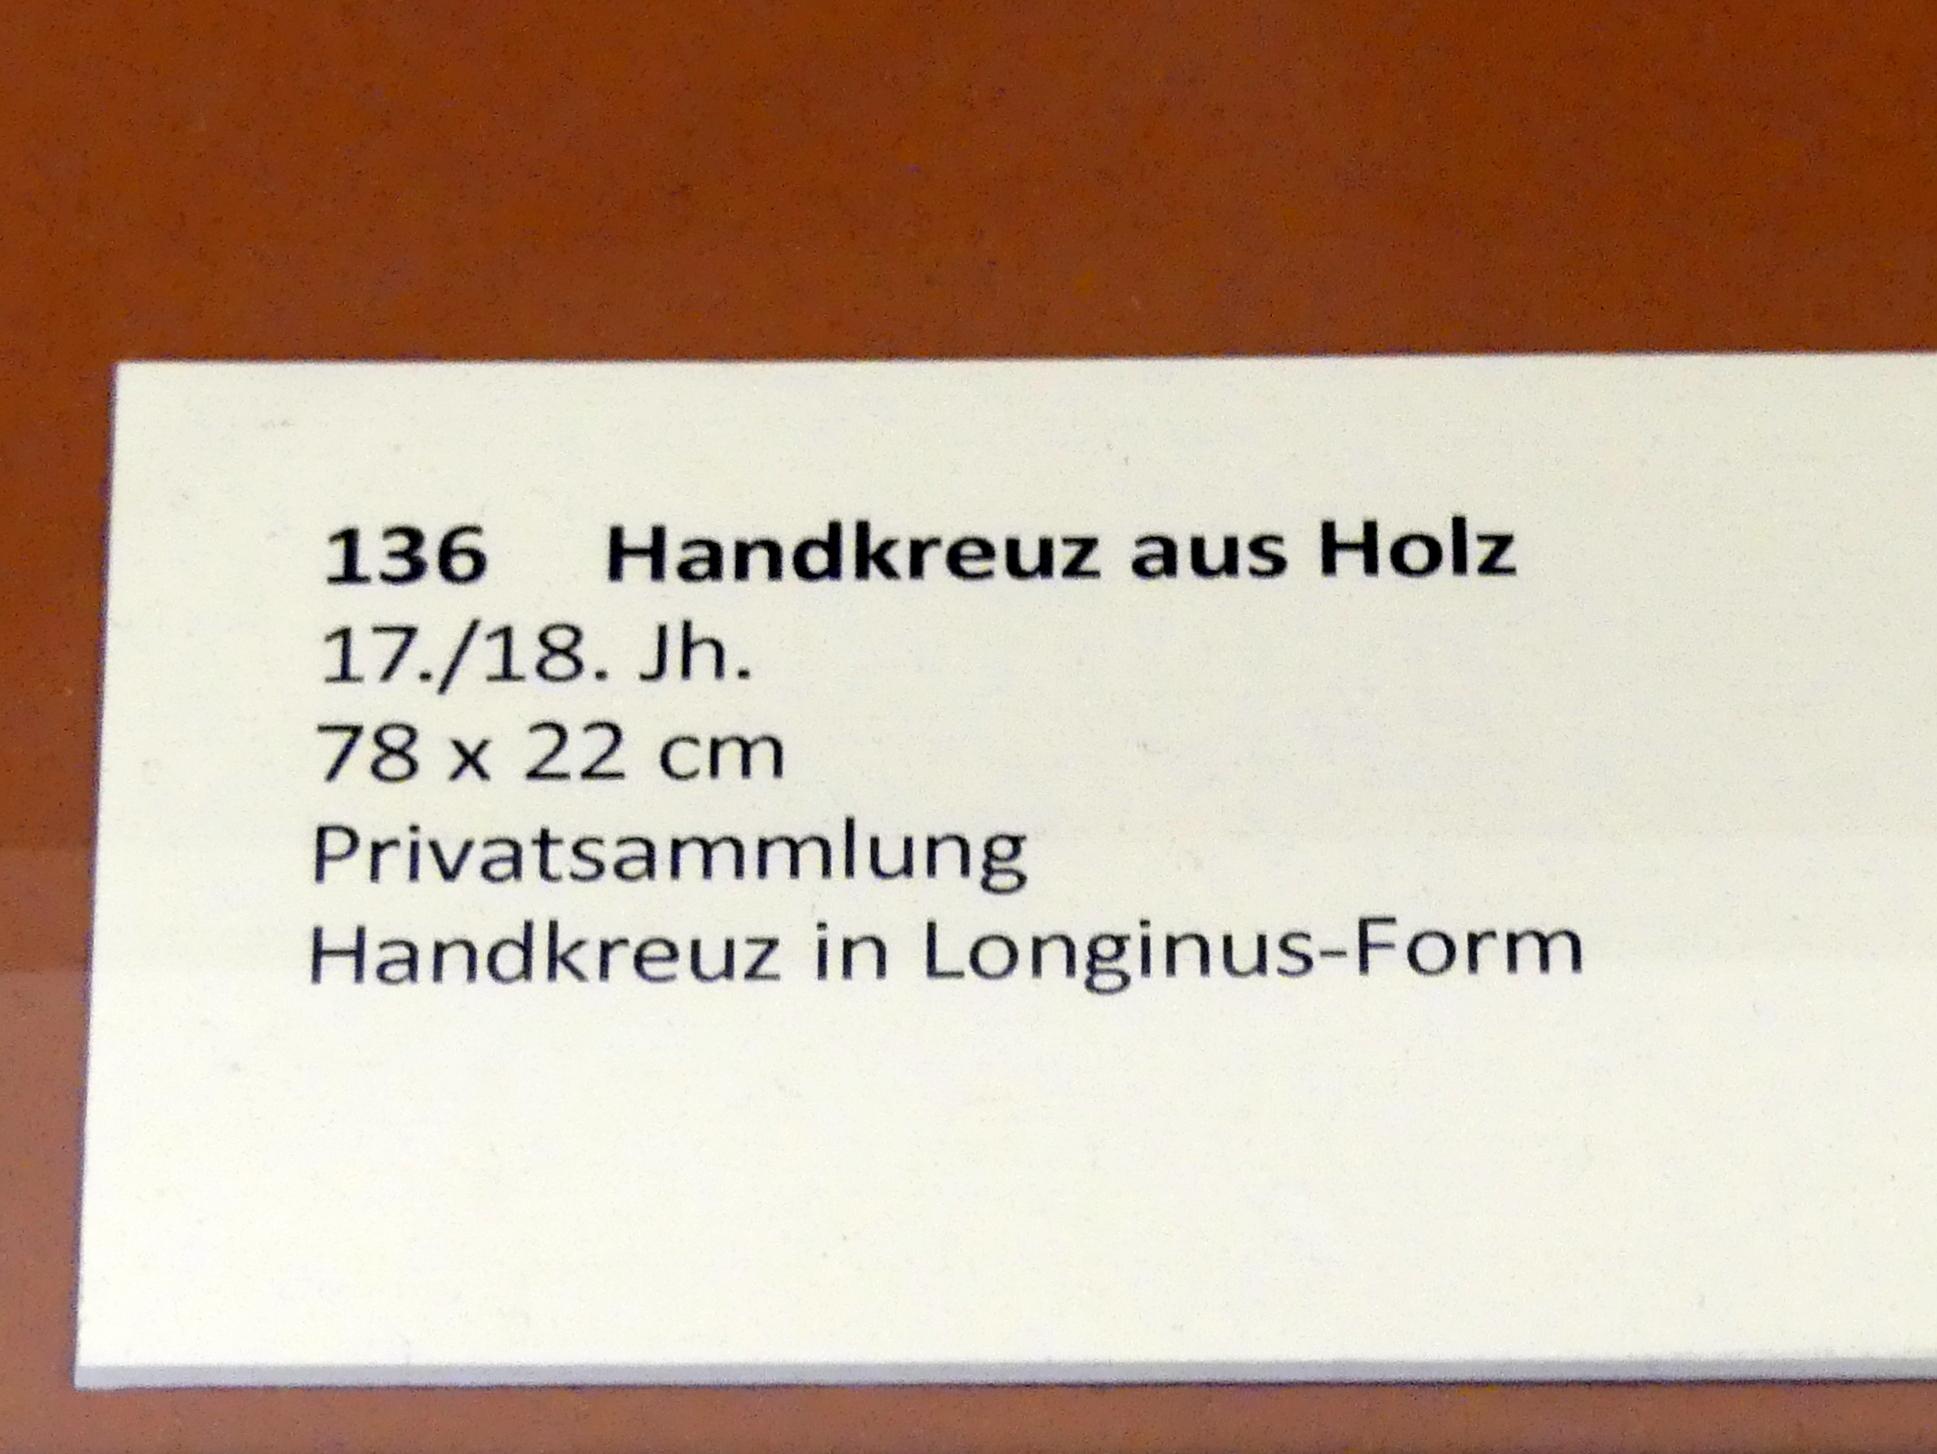 Handkreuz, Frankfurt am Main, Ikonen-Museum, Das äthiopisch-orthodoxe Christentum, um 1600–1800, Bild 2/2